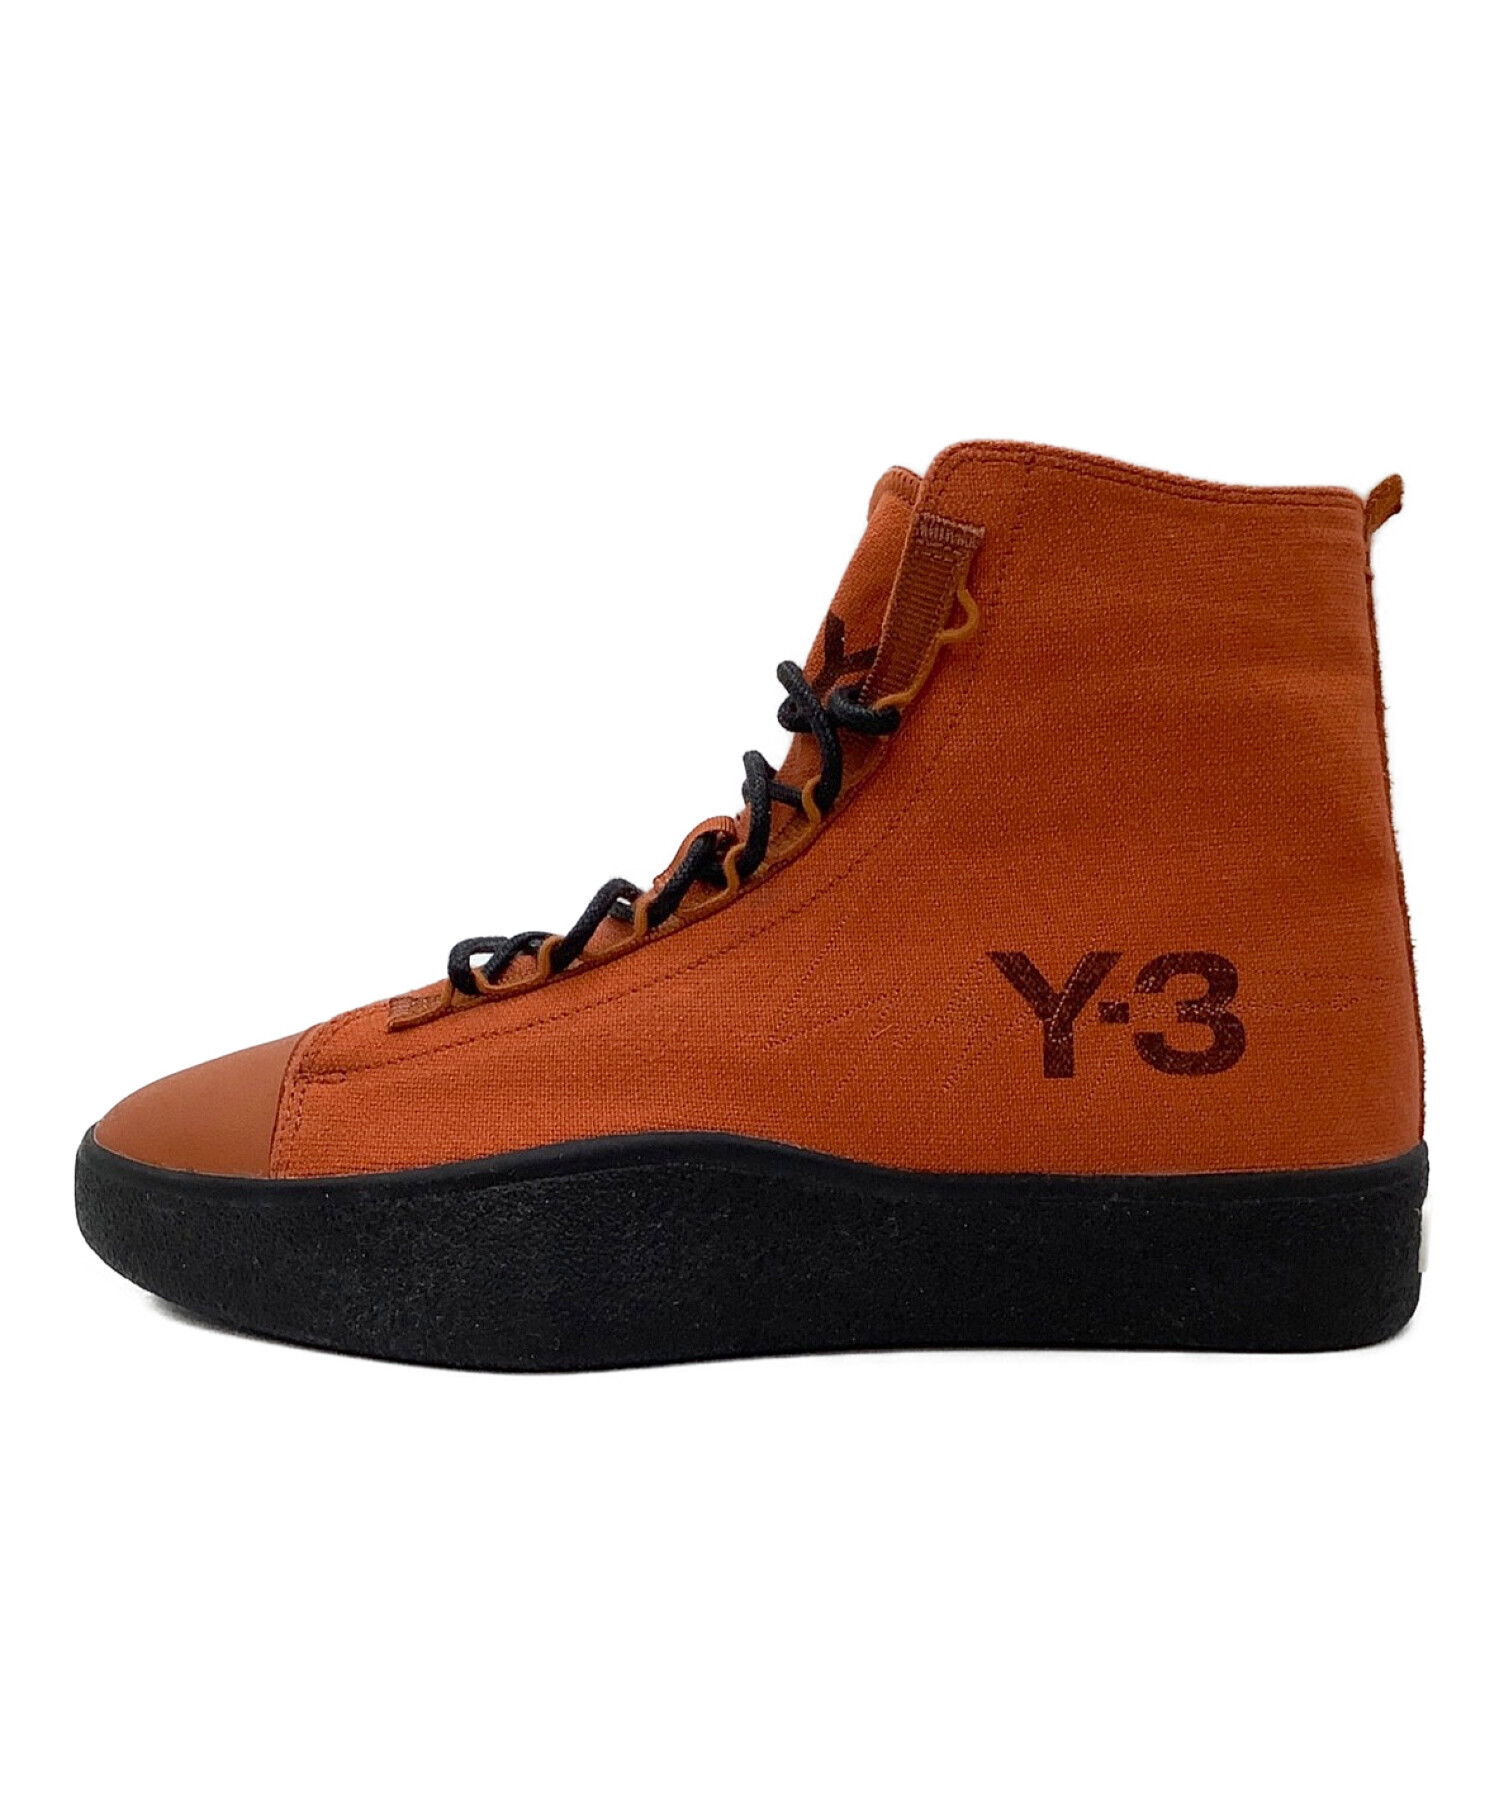 Y-3 (ワイスリー) ハイカットシューズ オレンジ サイズ:285